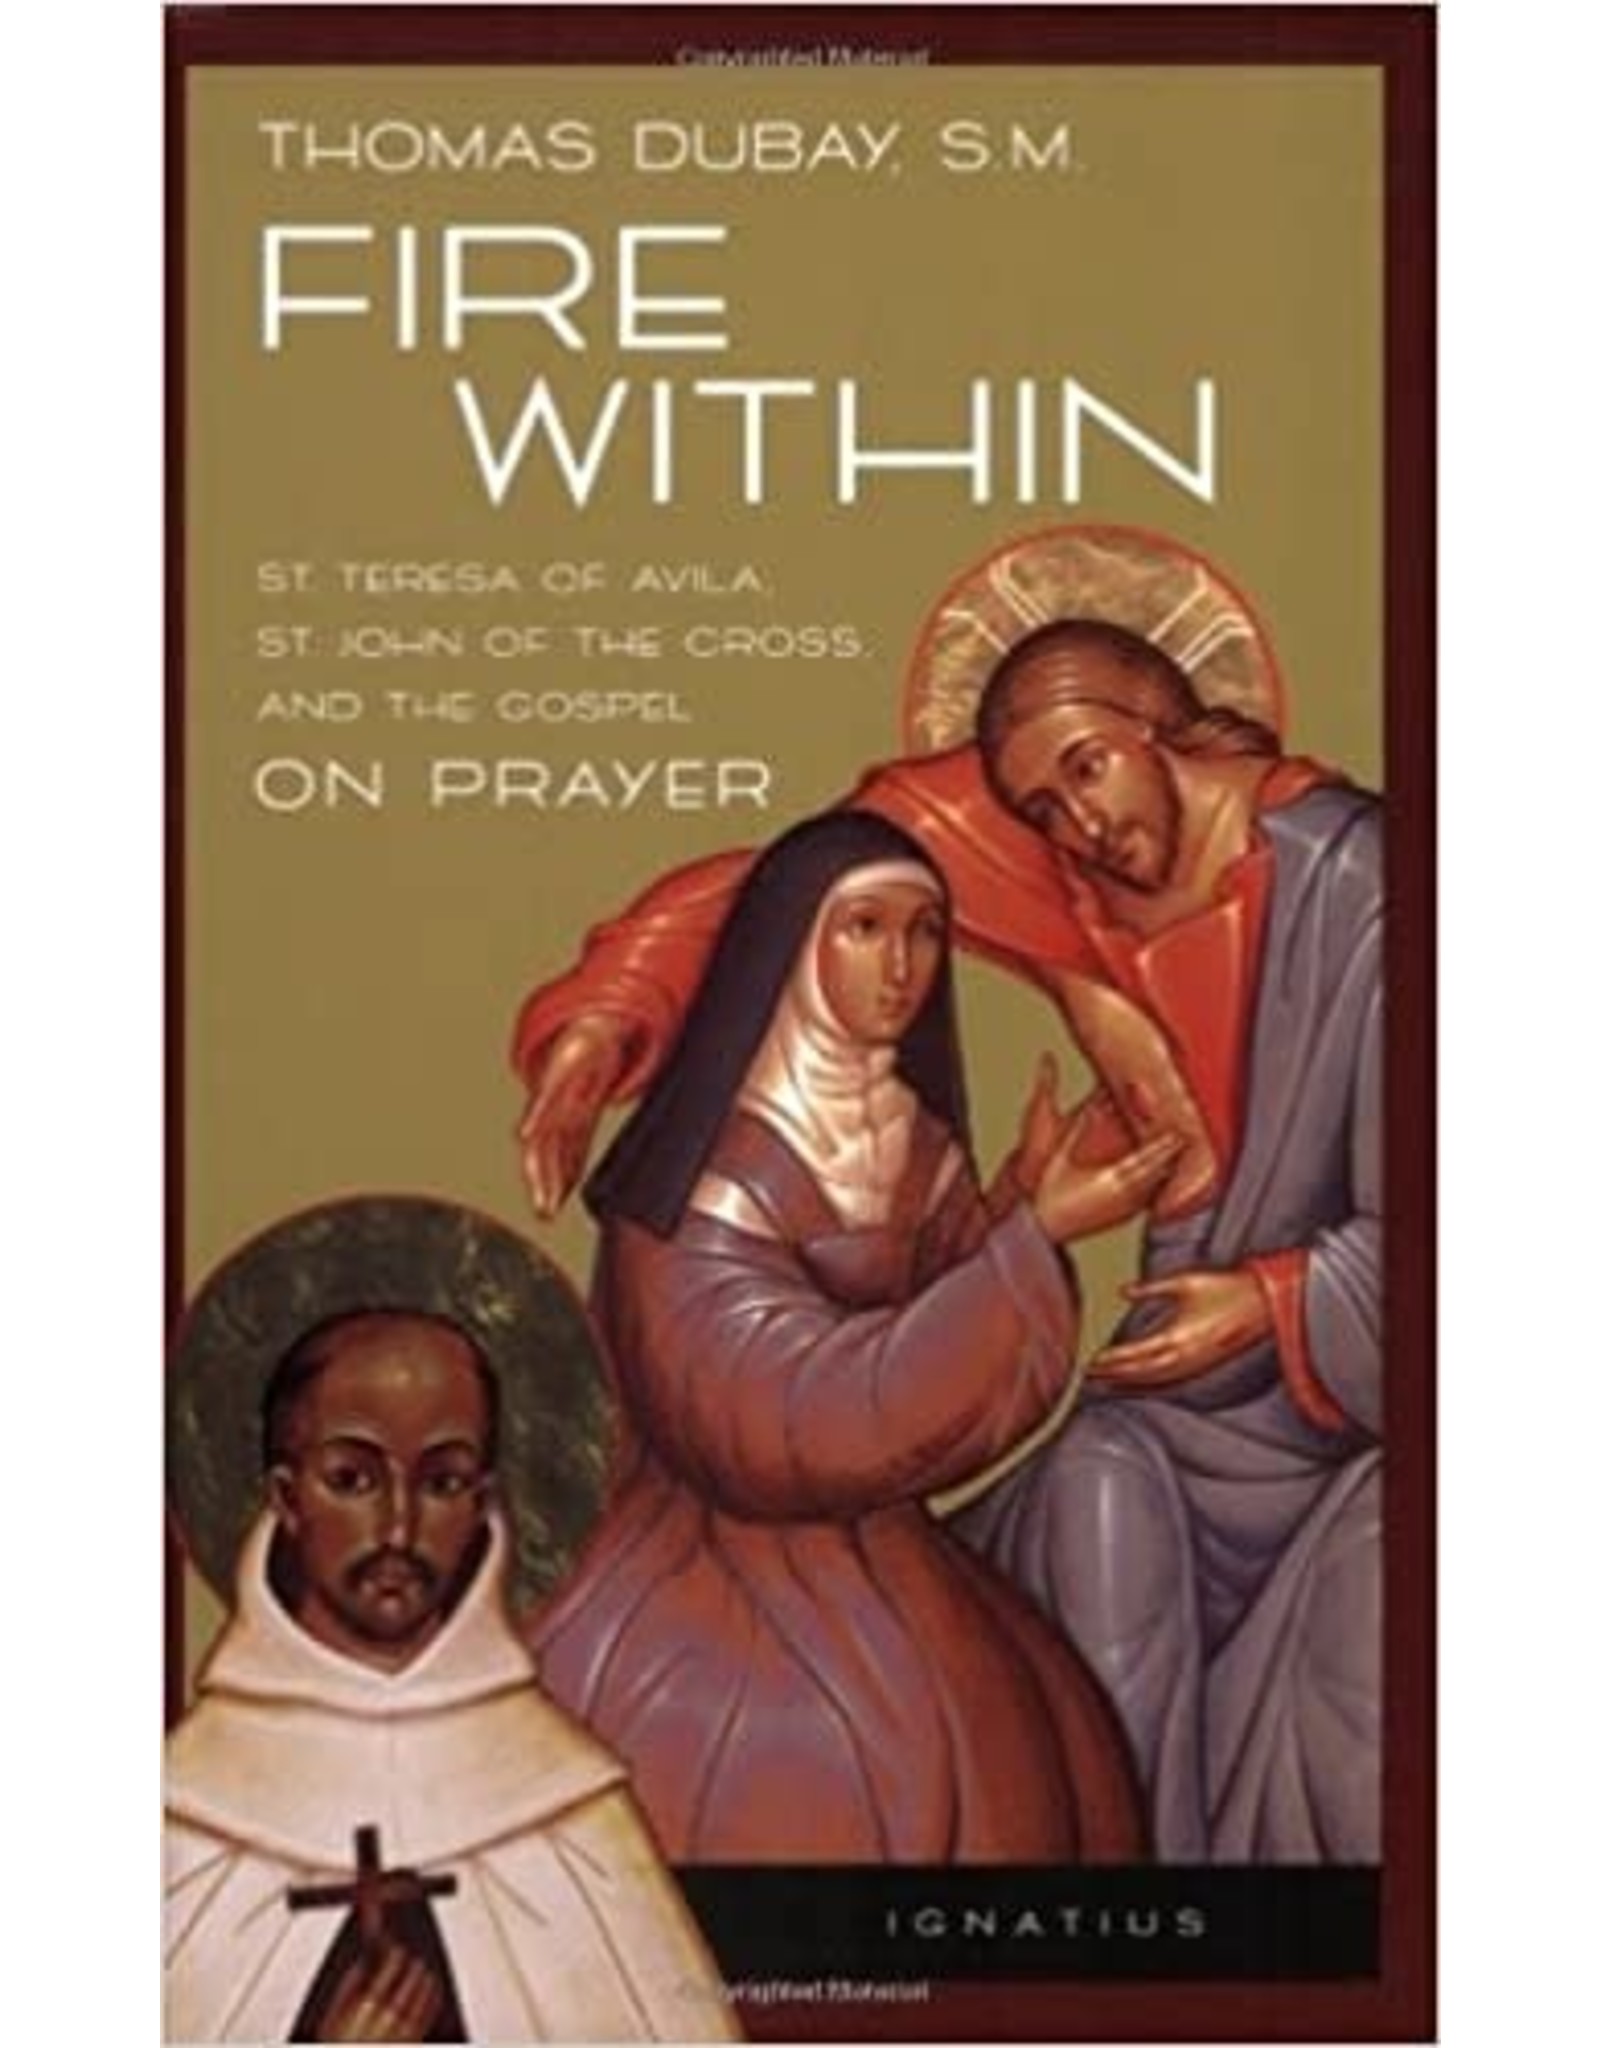 Fire Within: St. Teresa of Avila, St. John of the Cross, & the Gospel on Prayer